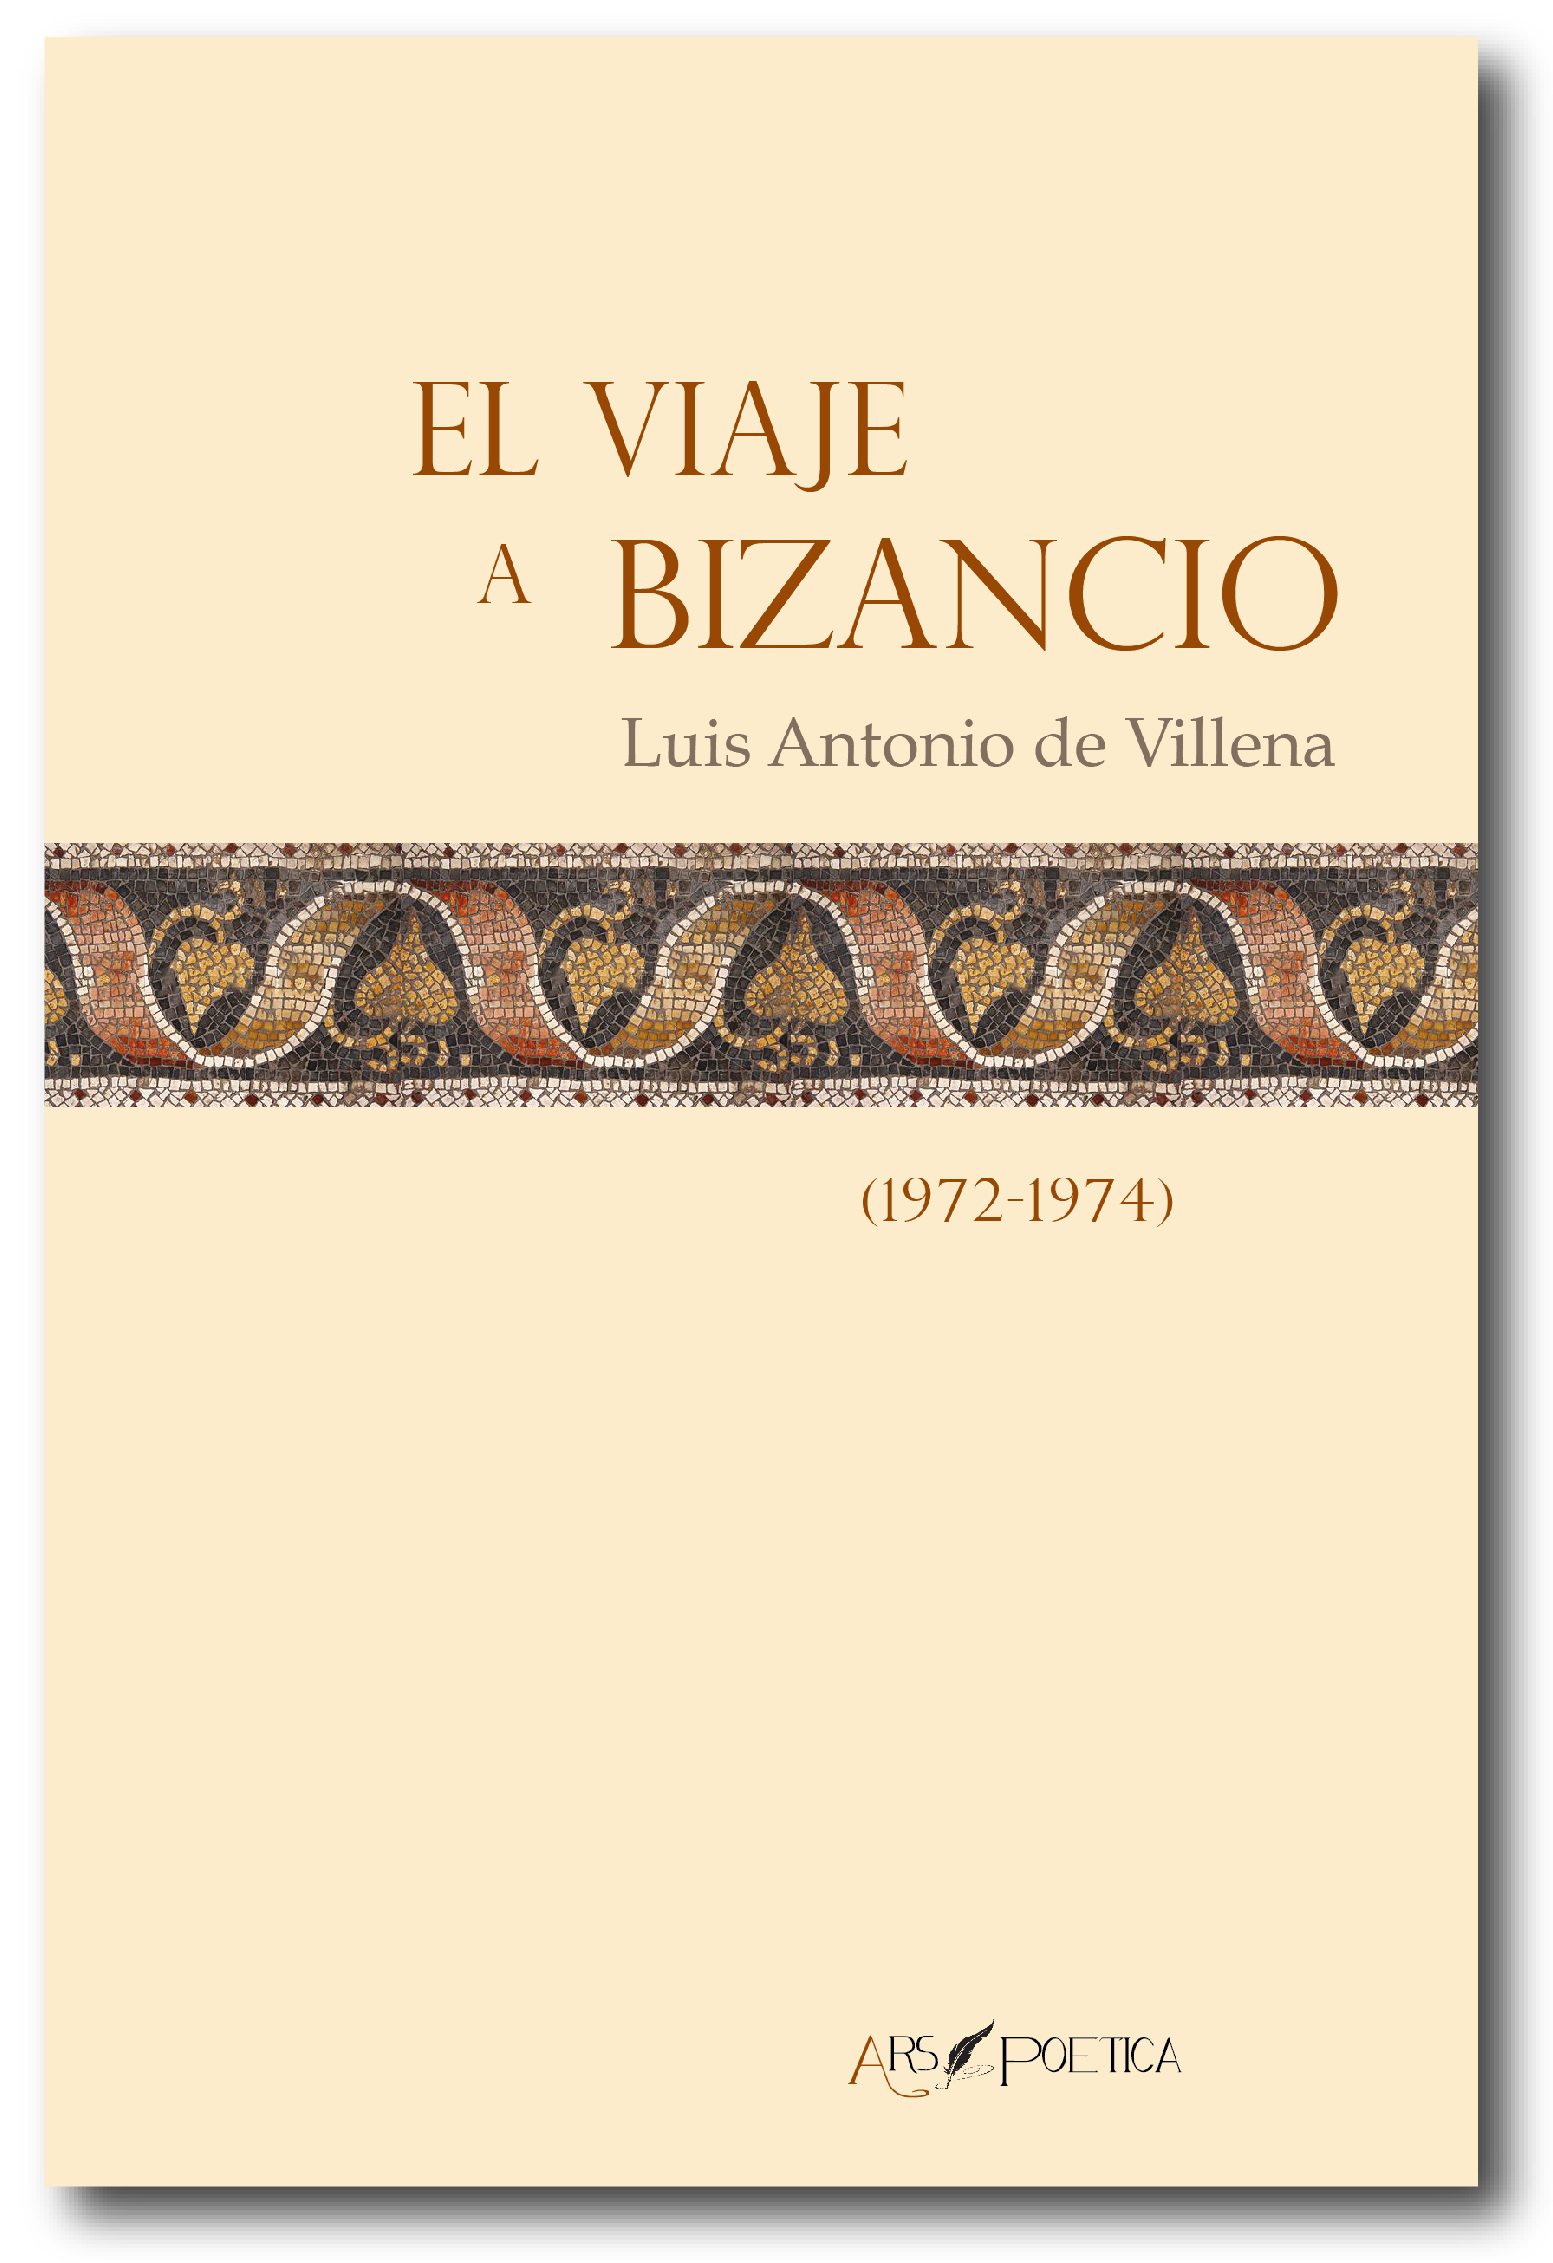 El viaje a Bizancio. (1972-1974) - Ars Poetica